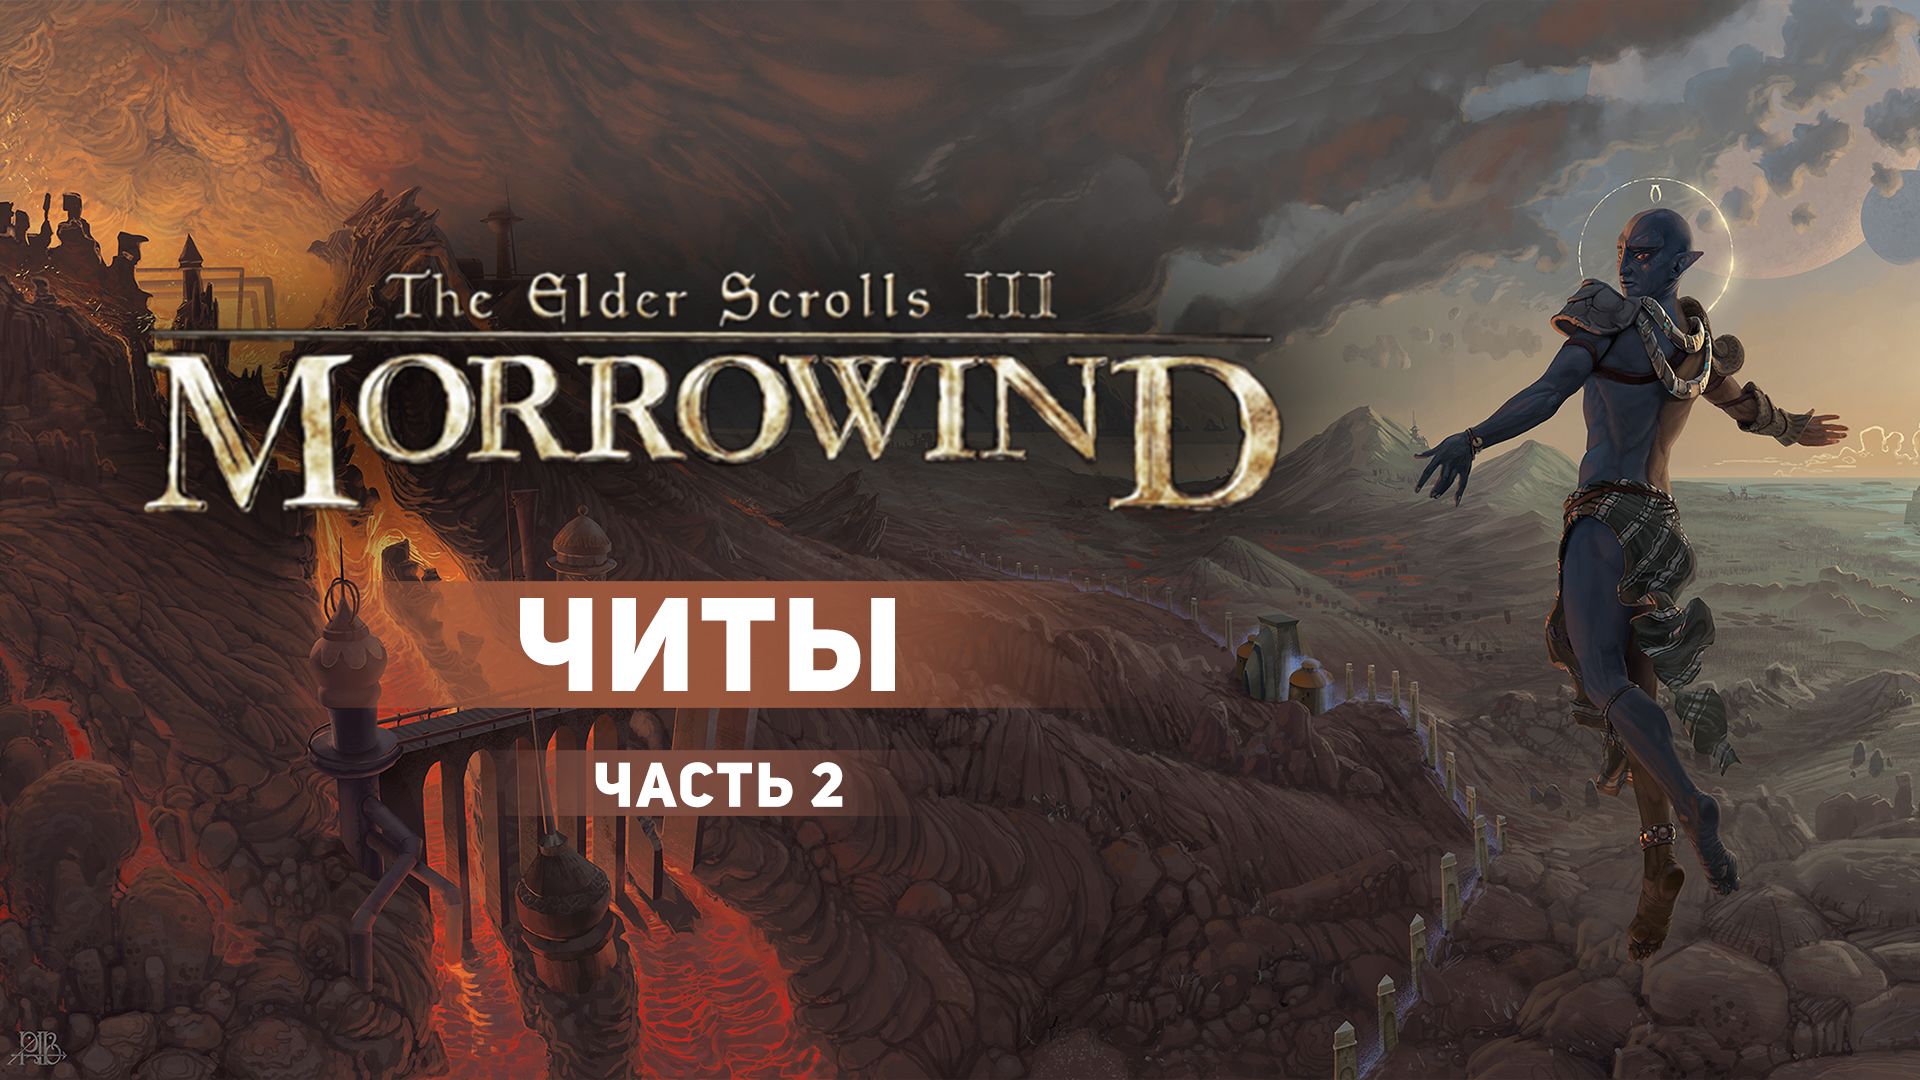 Читы для The Elder Scrolls III: Morrowind. Часть 2